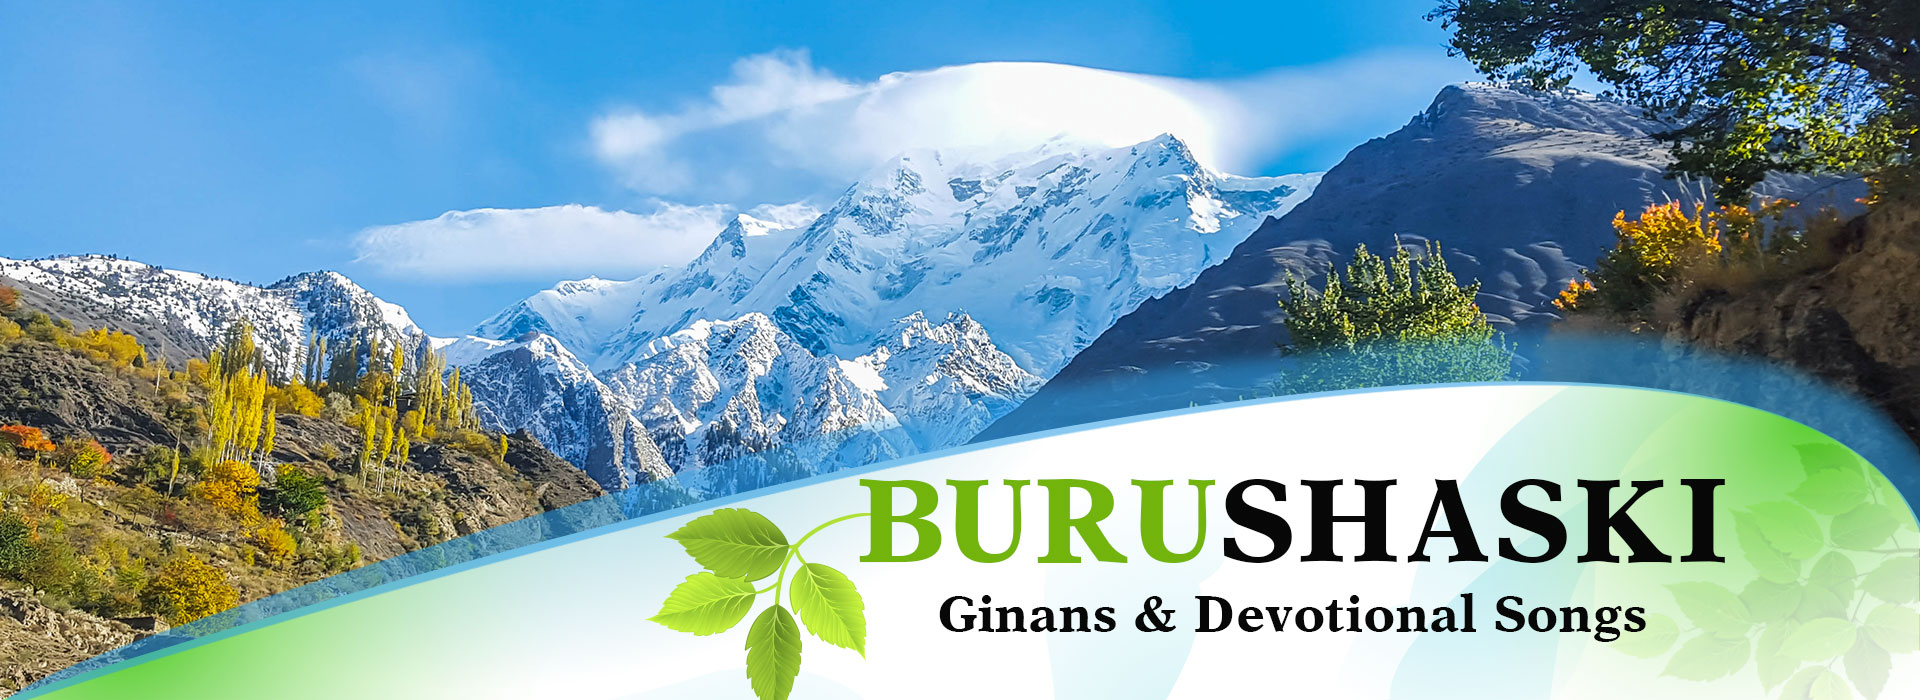 burushaski-banner.jpg